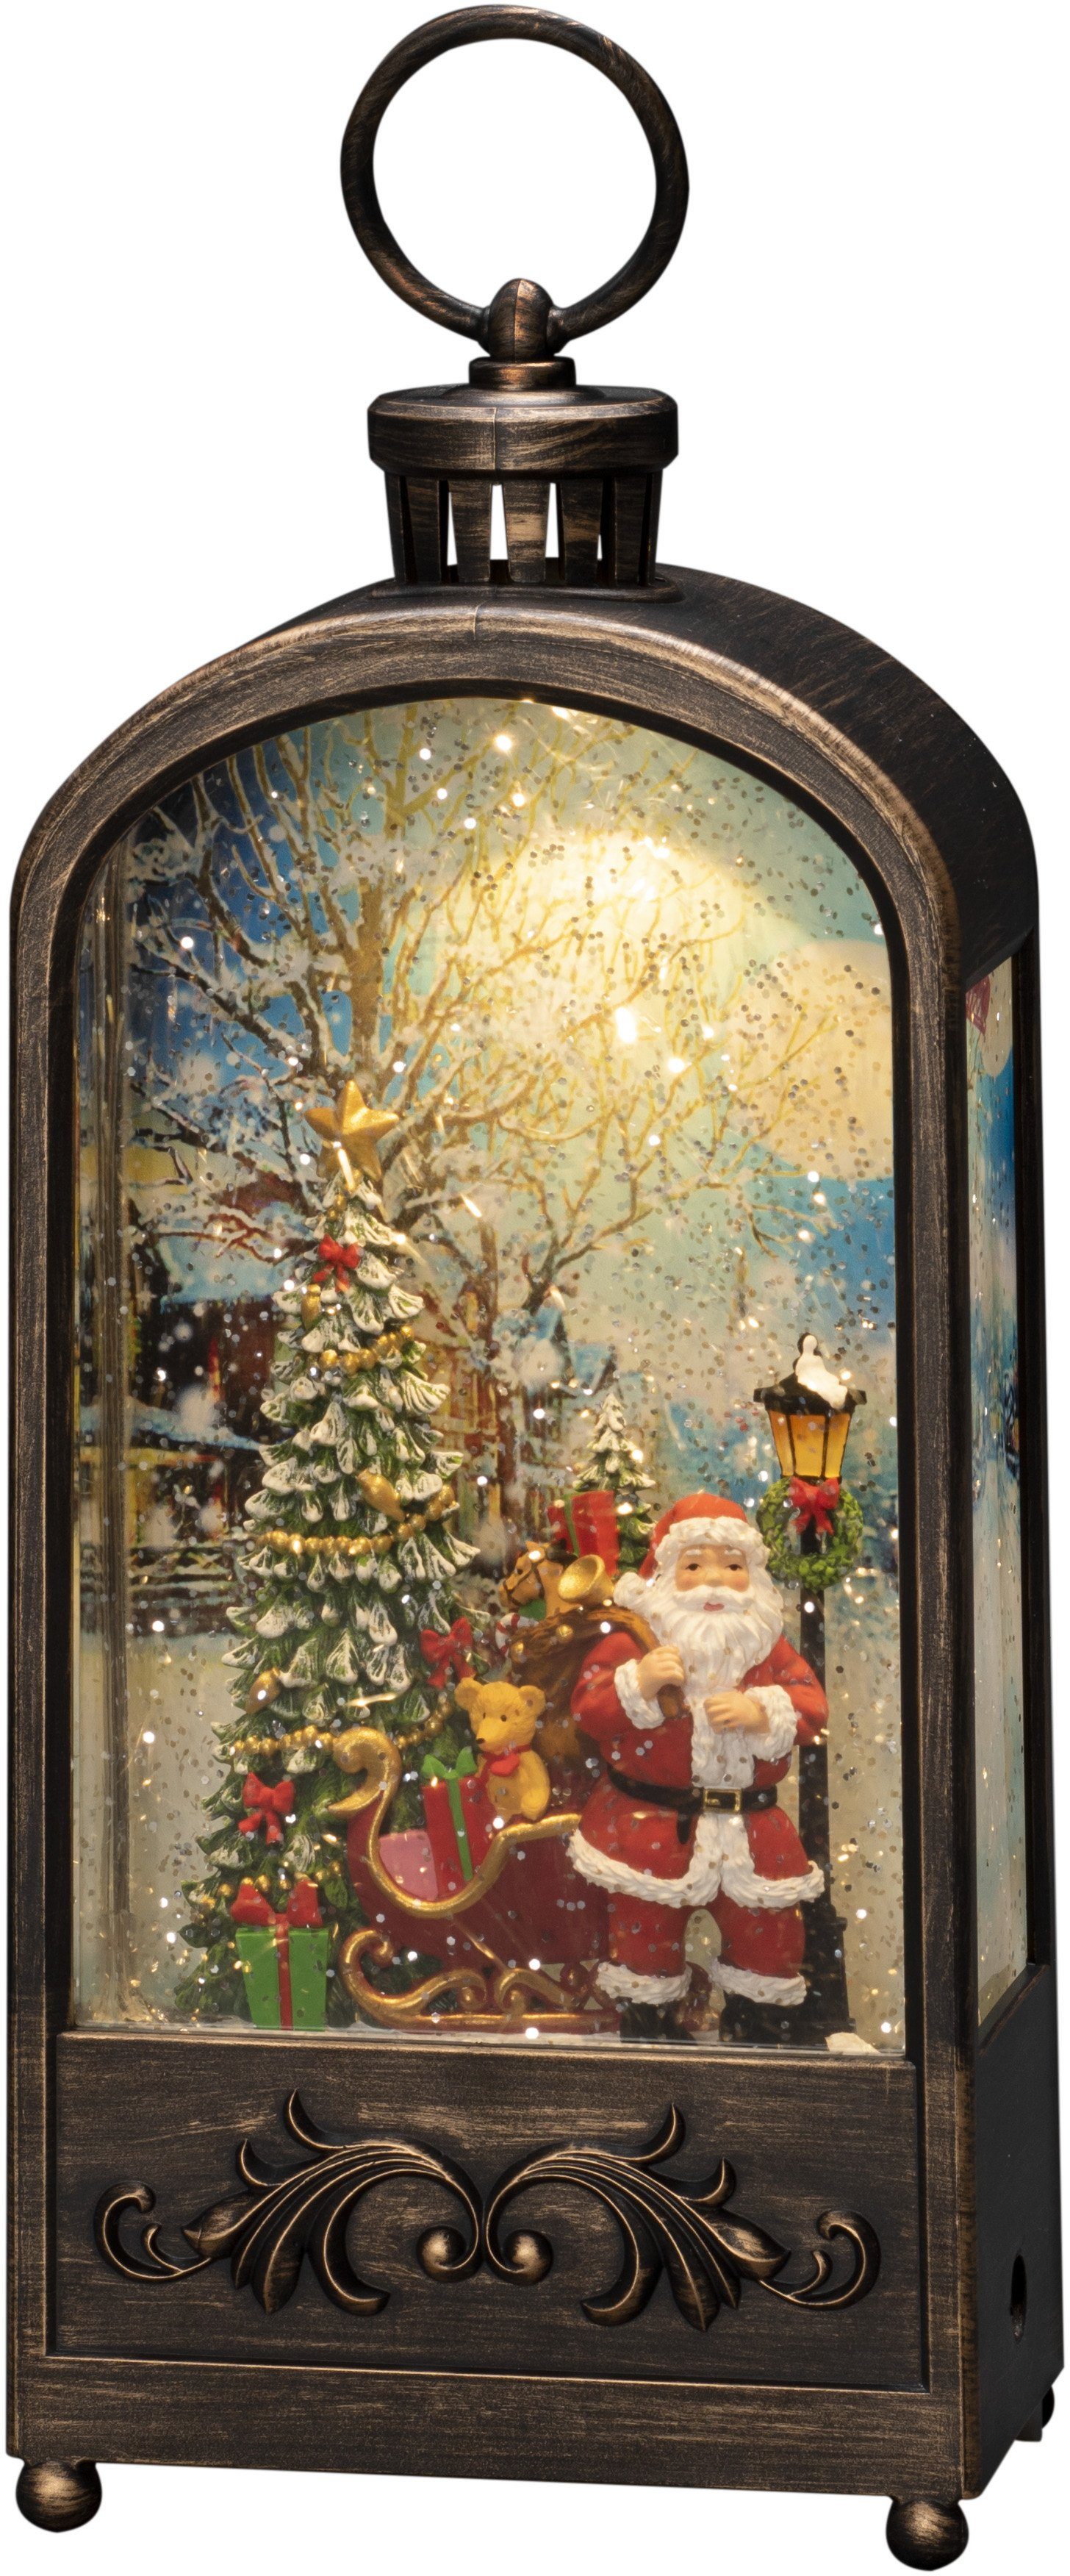 KONSTSMIDE Santa 5h weiße 1 wassergefüllt, Diode warm Warmweiß, LED Timer, Wasserlaterne fest integriert, LED Baum, Laterne und LED